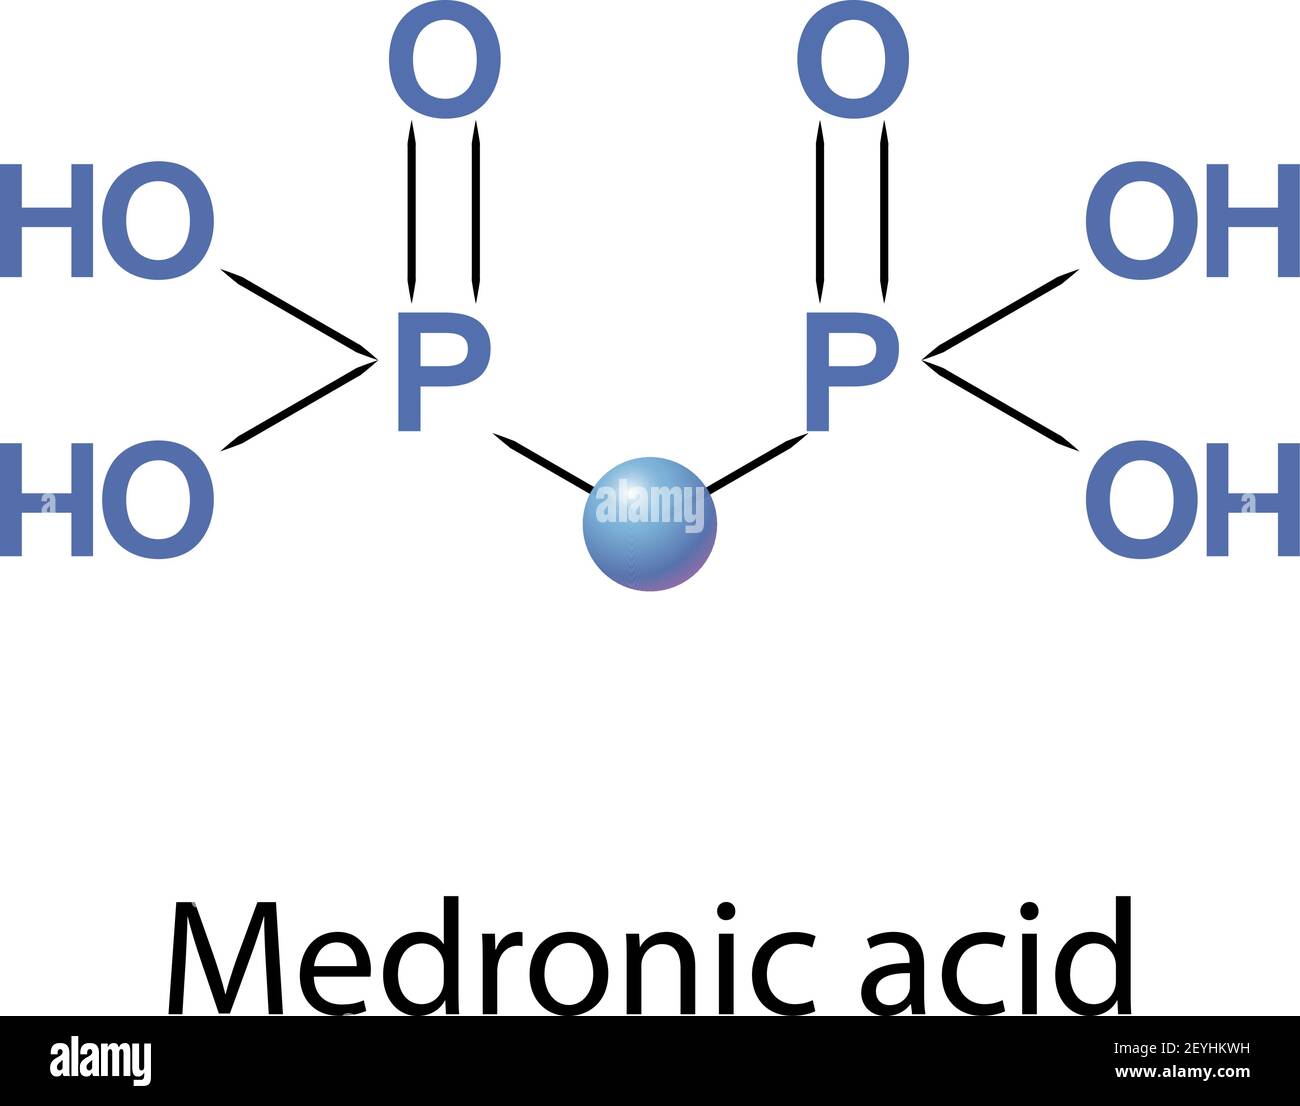 Medronic acid, methylene diphosphonate, is the smallest bisphosphonate. Stock Vector